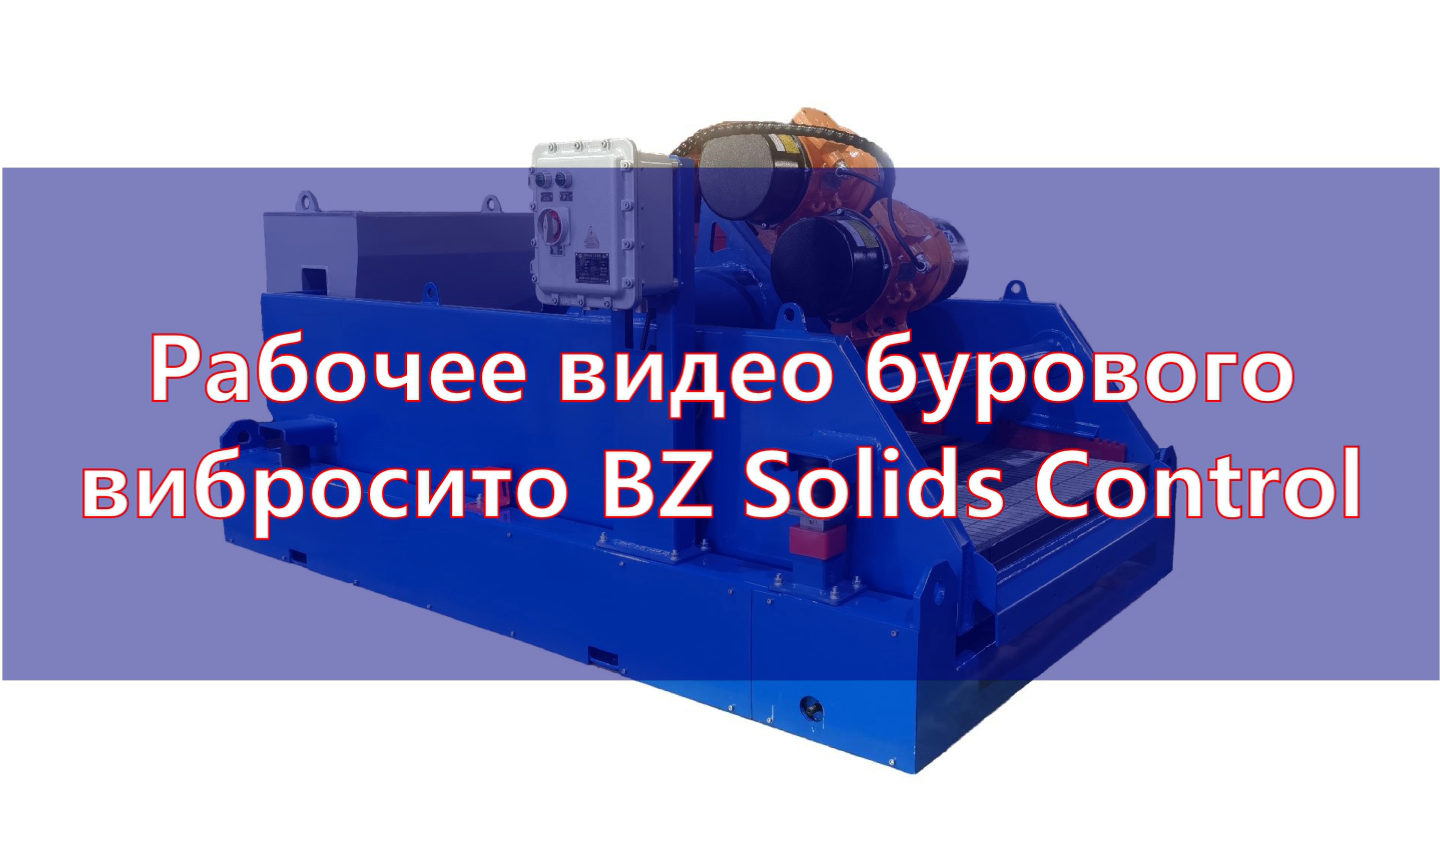 Рабочее видео бурового вибросито BZ Solids Control